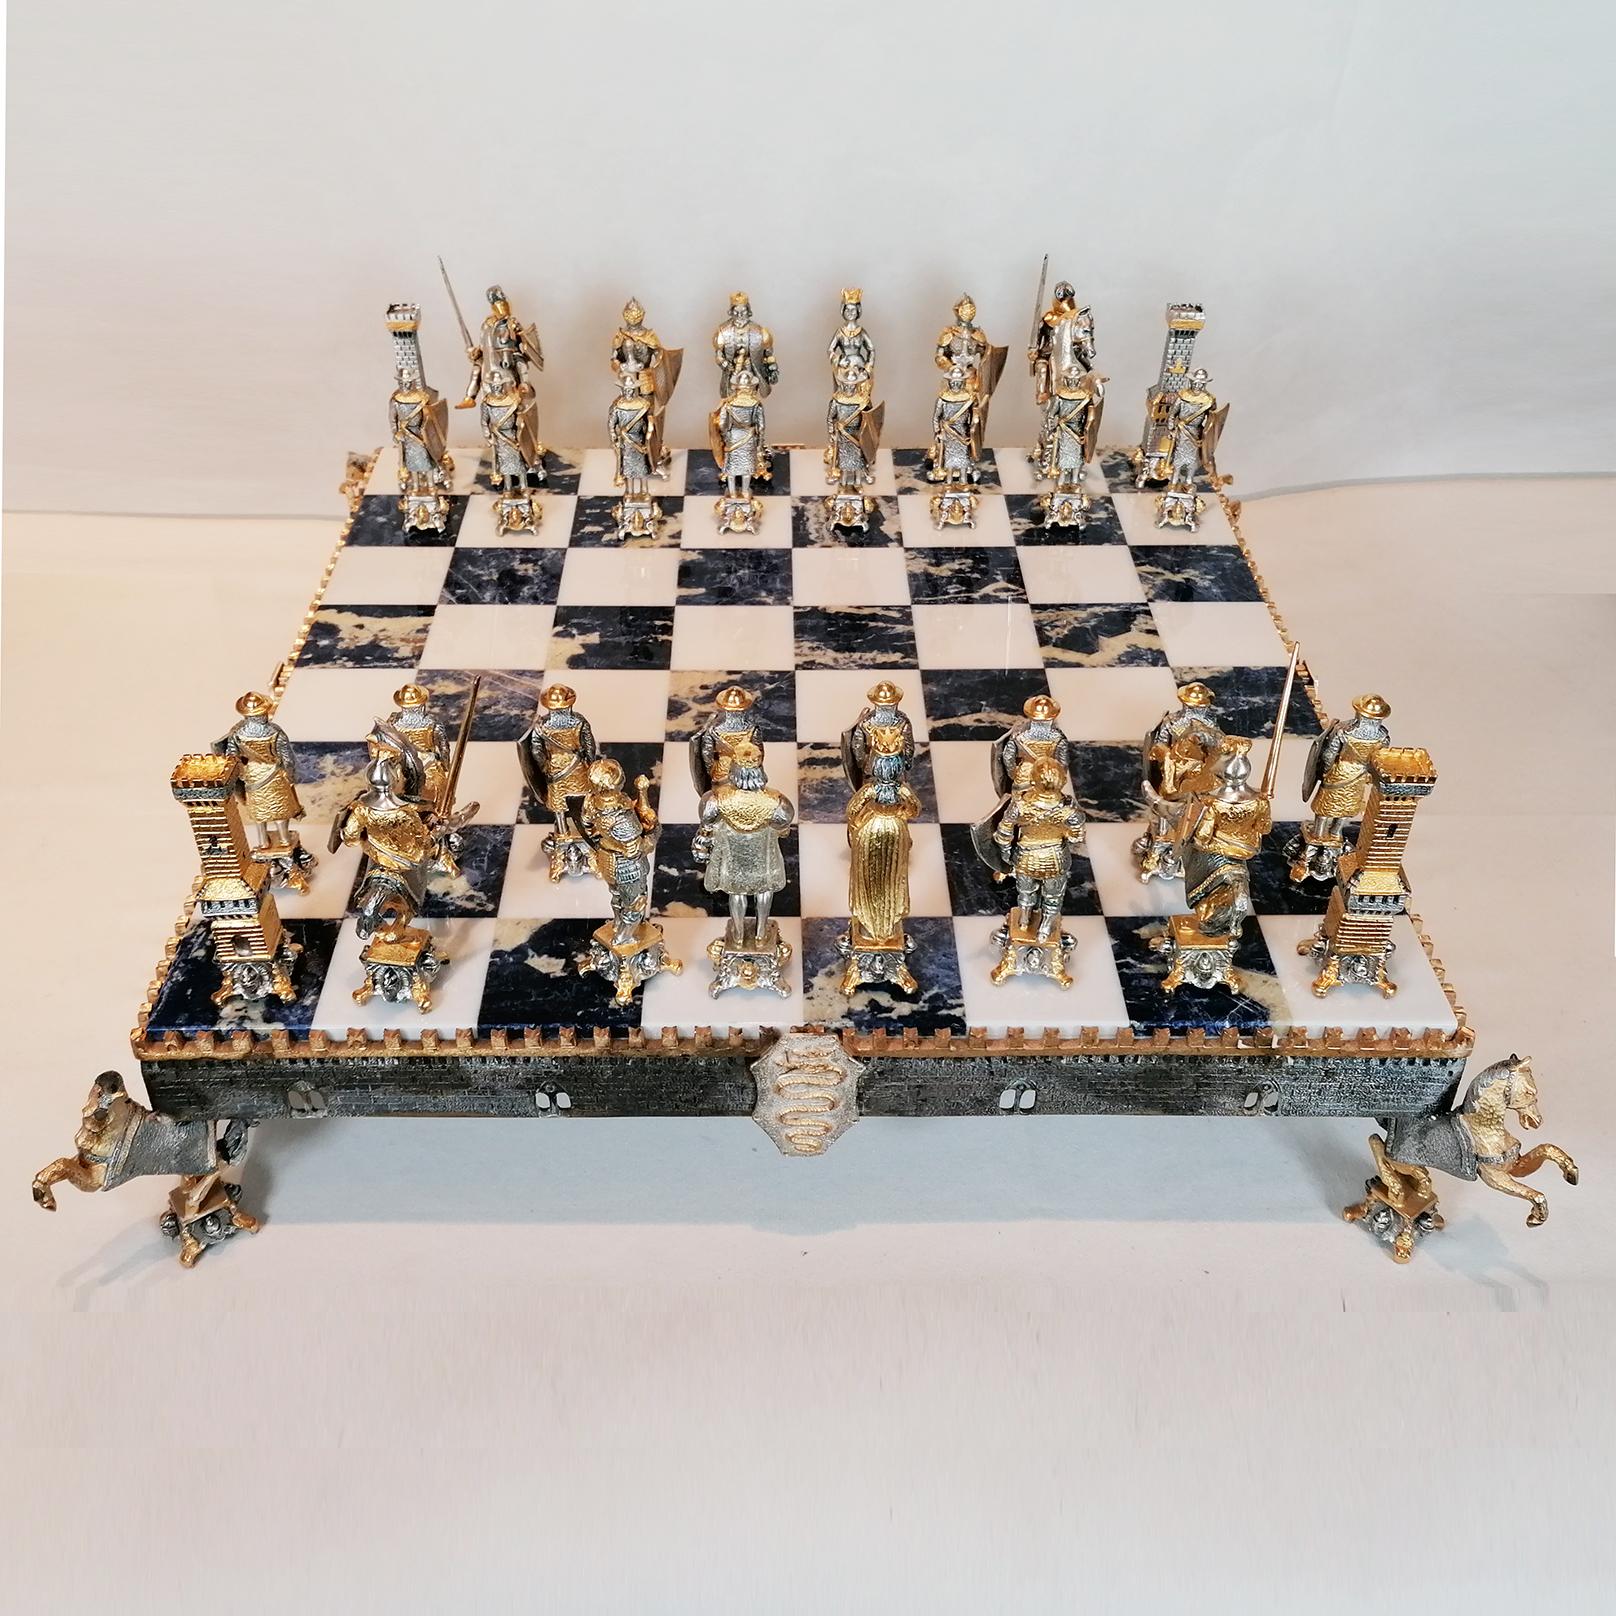 Impressionnant jeu d'échecs en argent sterling de style médiéval.
L'échiquier, réalisé par ARVAL ARGENTI VALENZA, en marbre blanc et sodalite, est soutenu par un cadre en ARGENT STERLING réalisé selon la méthode de la fonte et fini au ciseau,